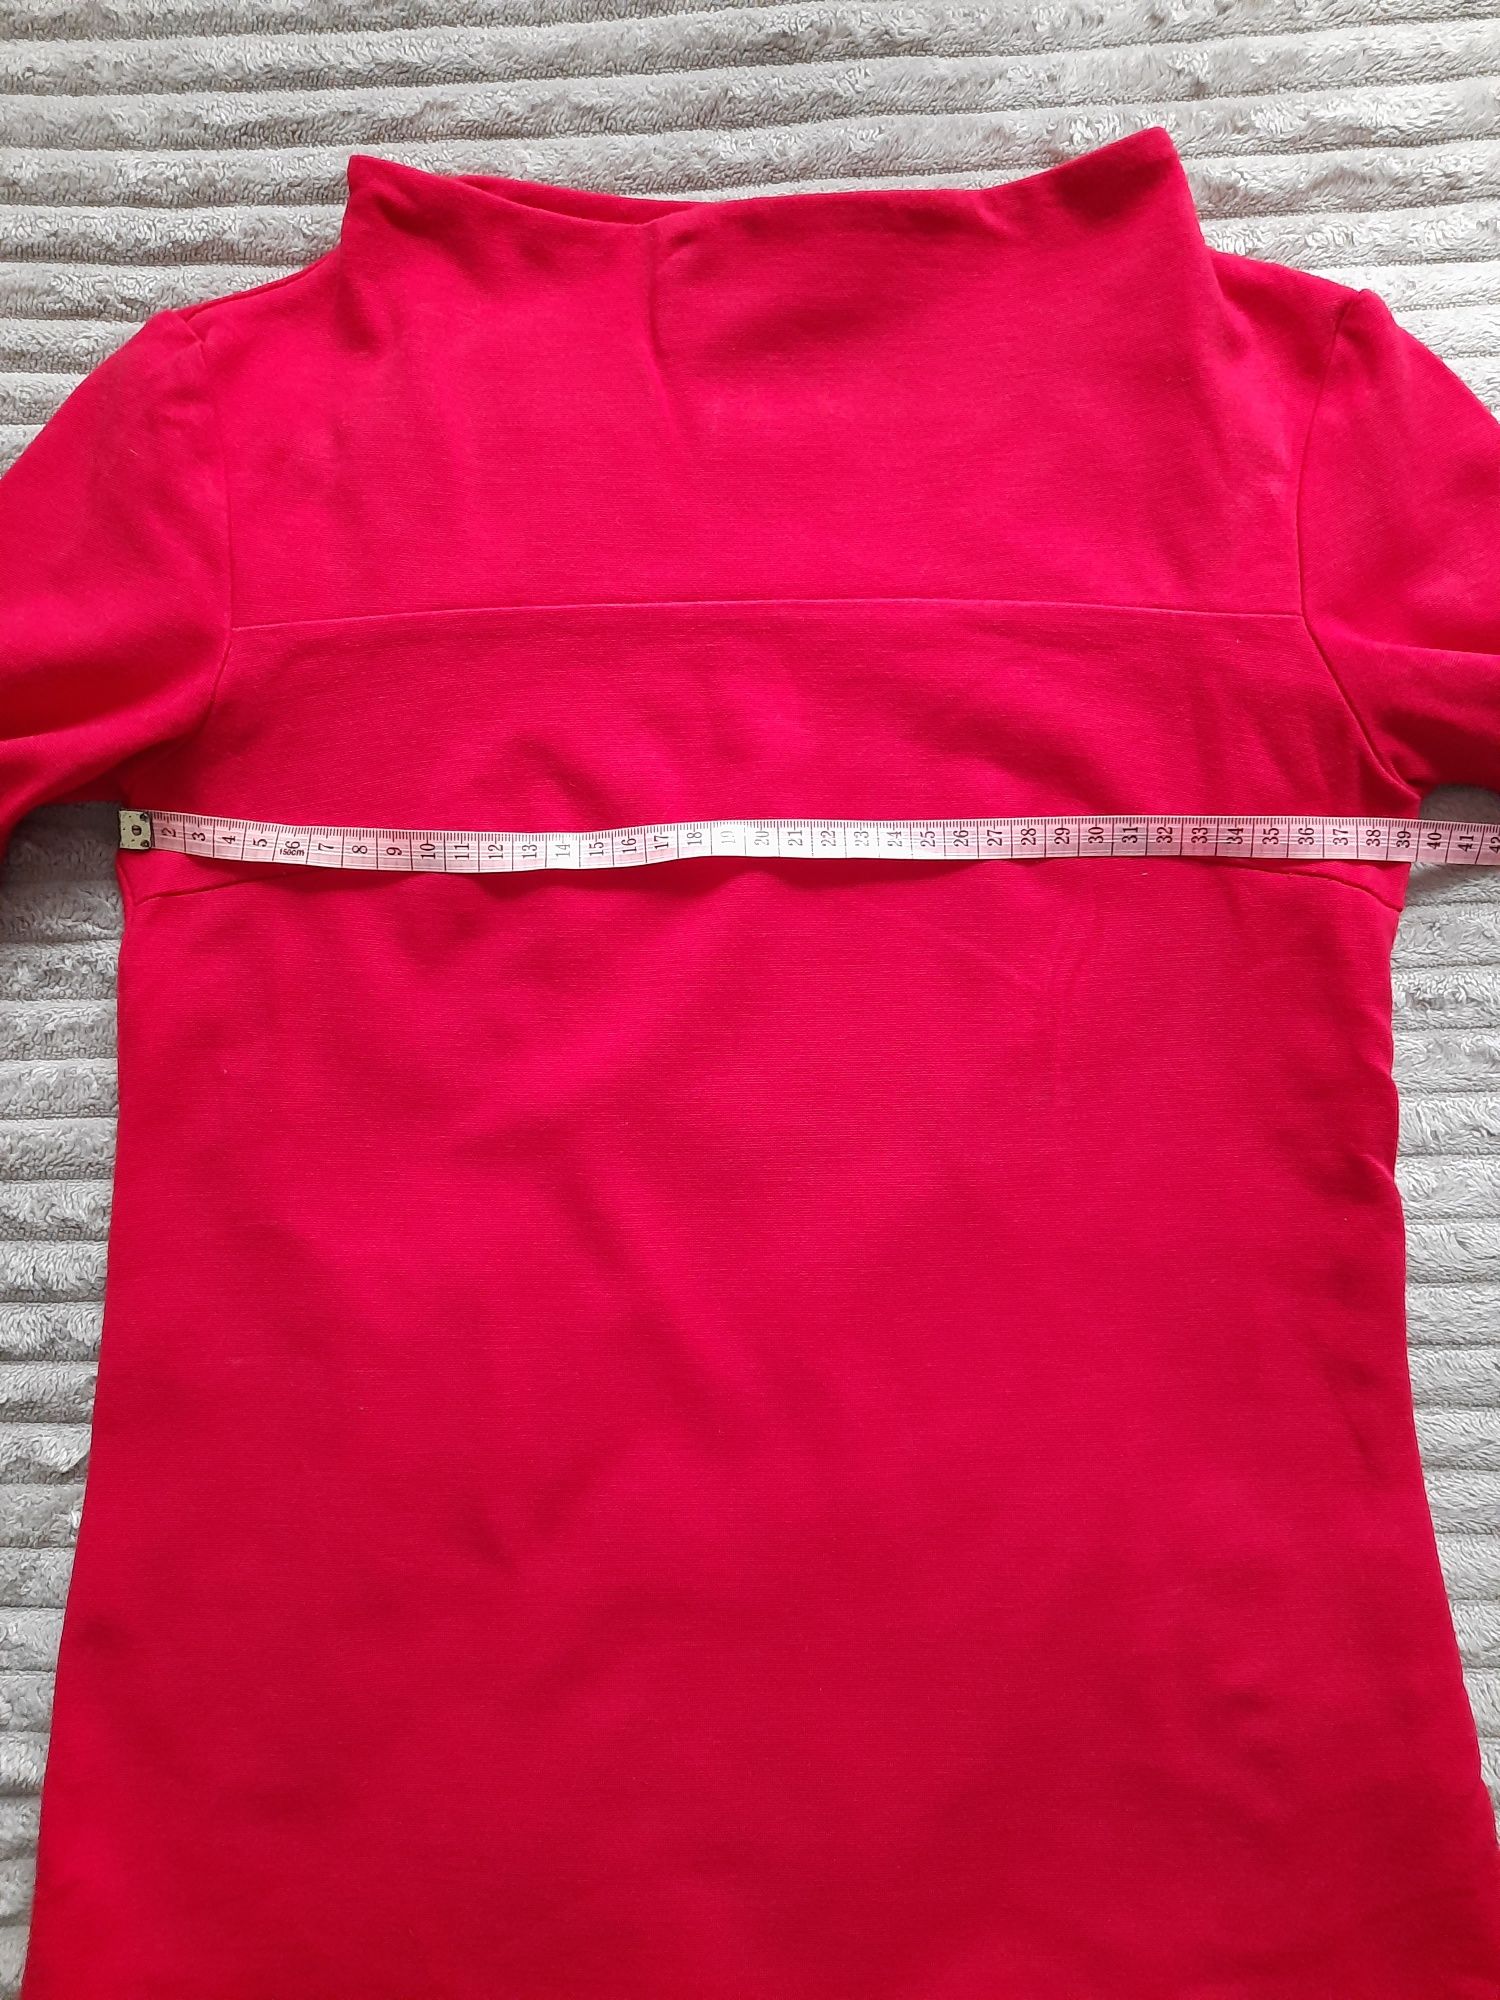 Bluzka półgolf czerwona długi rękaw XS 34